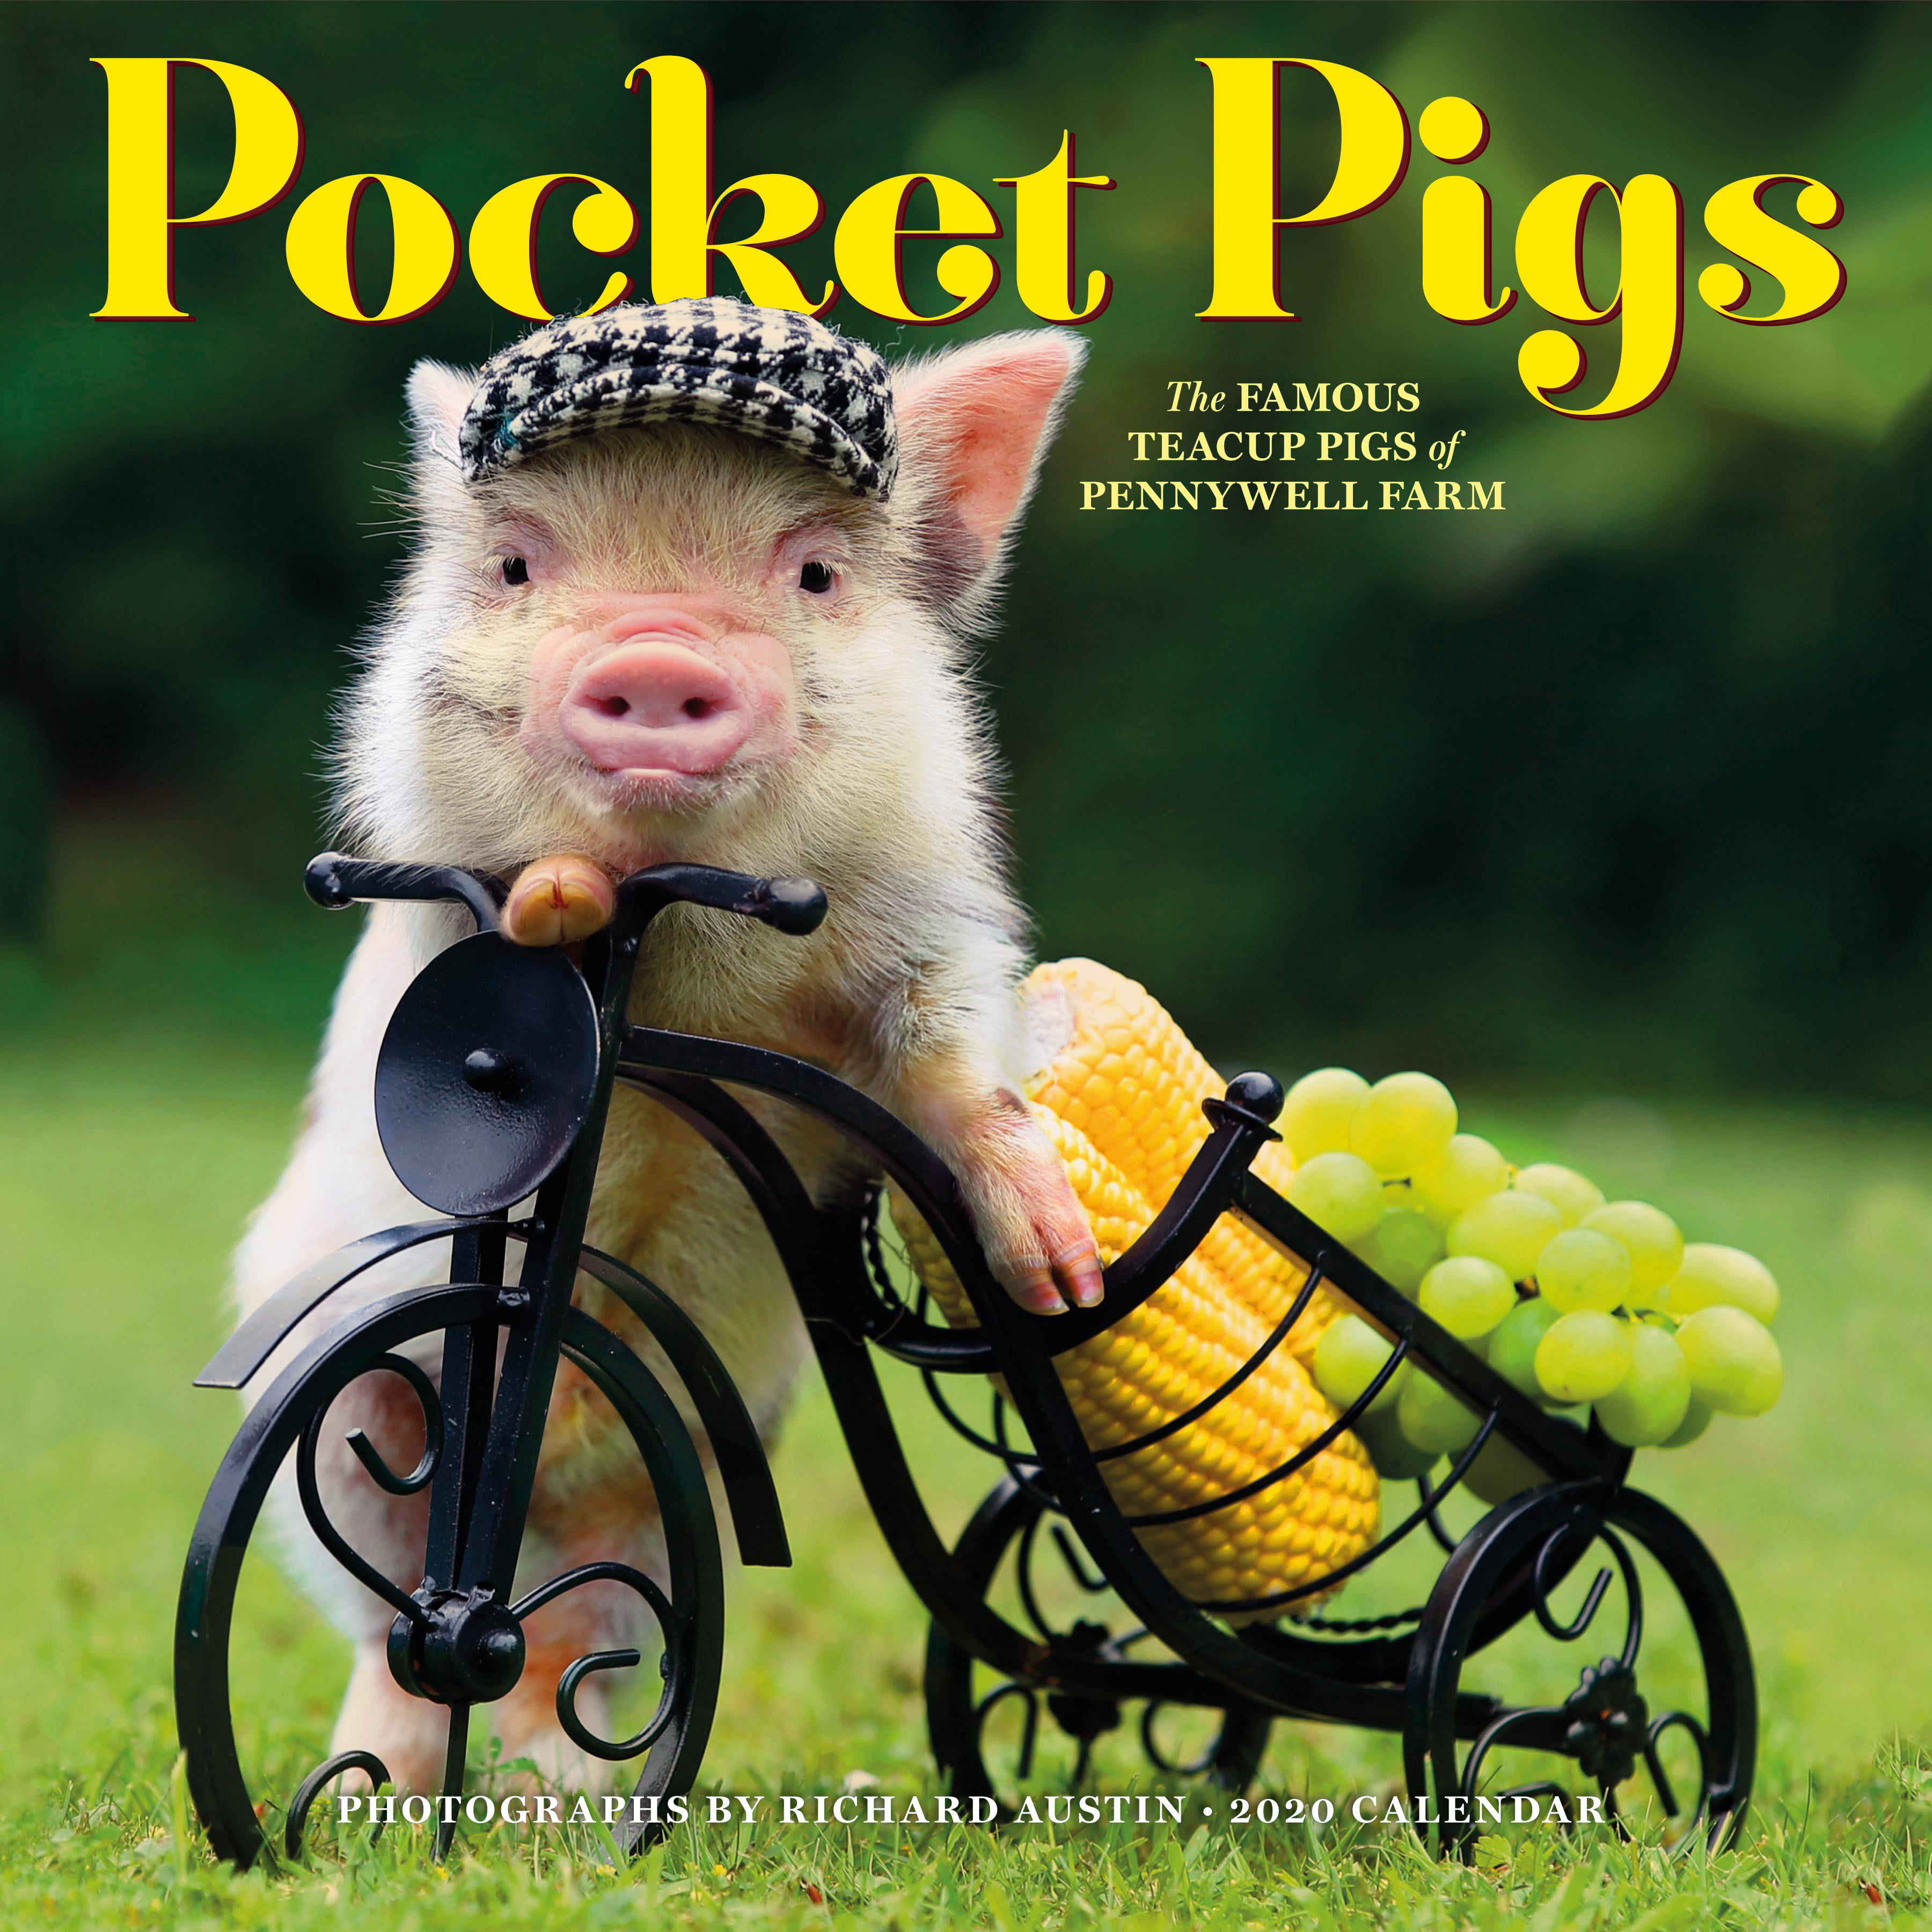 pocket-pigs-wall-calendar-2020-other-walmart-walmart